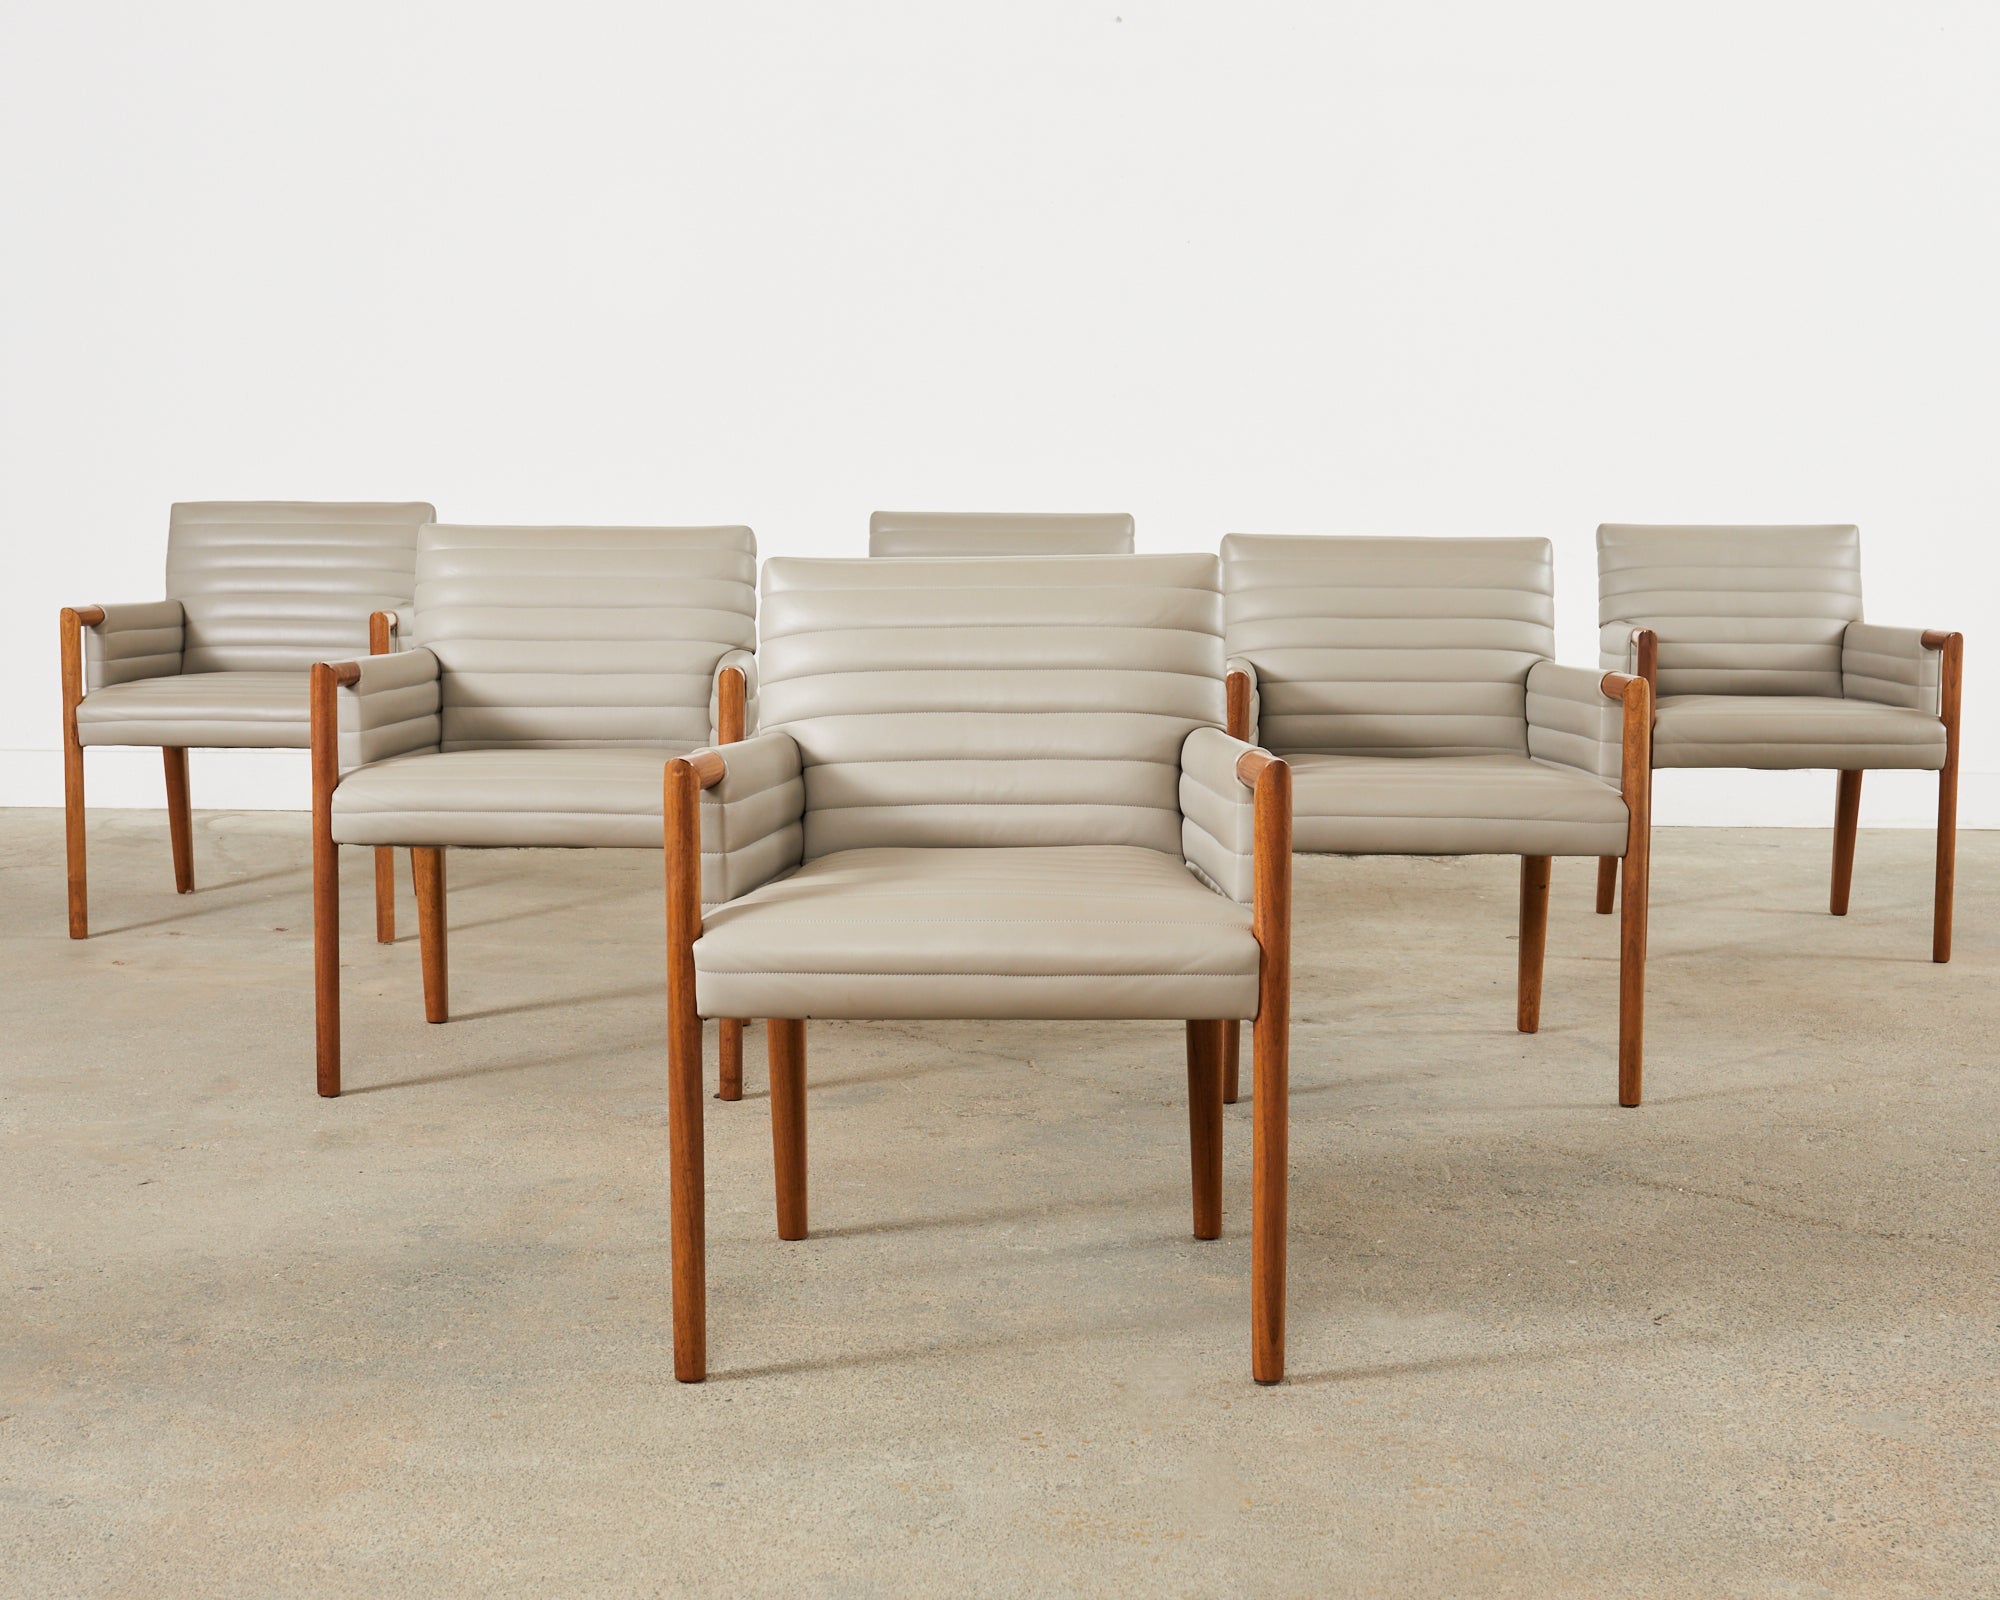 Bemerkenswerter Satz von sechs Esstischsesseln, entworfen von Douglas Levine für Bright Chair Company in New York. Der Sessel Gosha hat einen dicken Hartholzrahmen, der mit gestepptem Leder bezogen ist, das wie ein feiner italienischer Anzug sitzt.